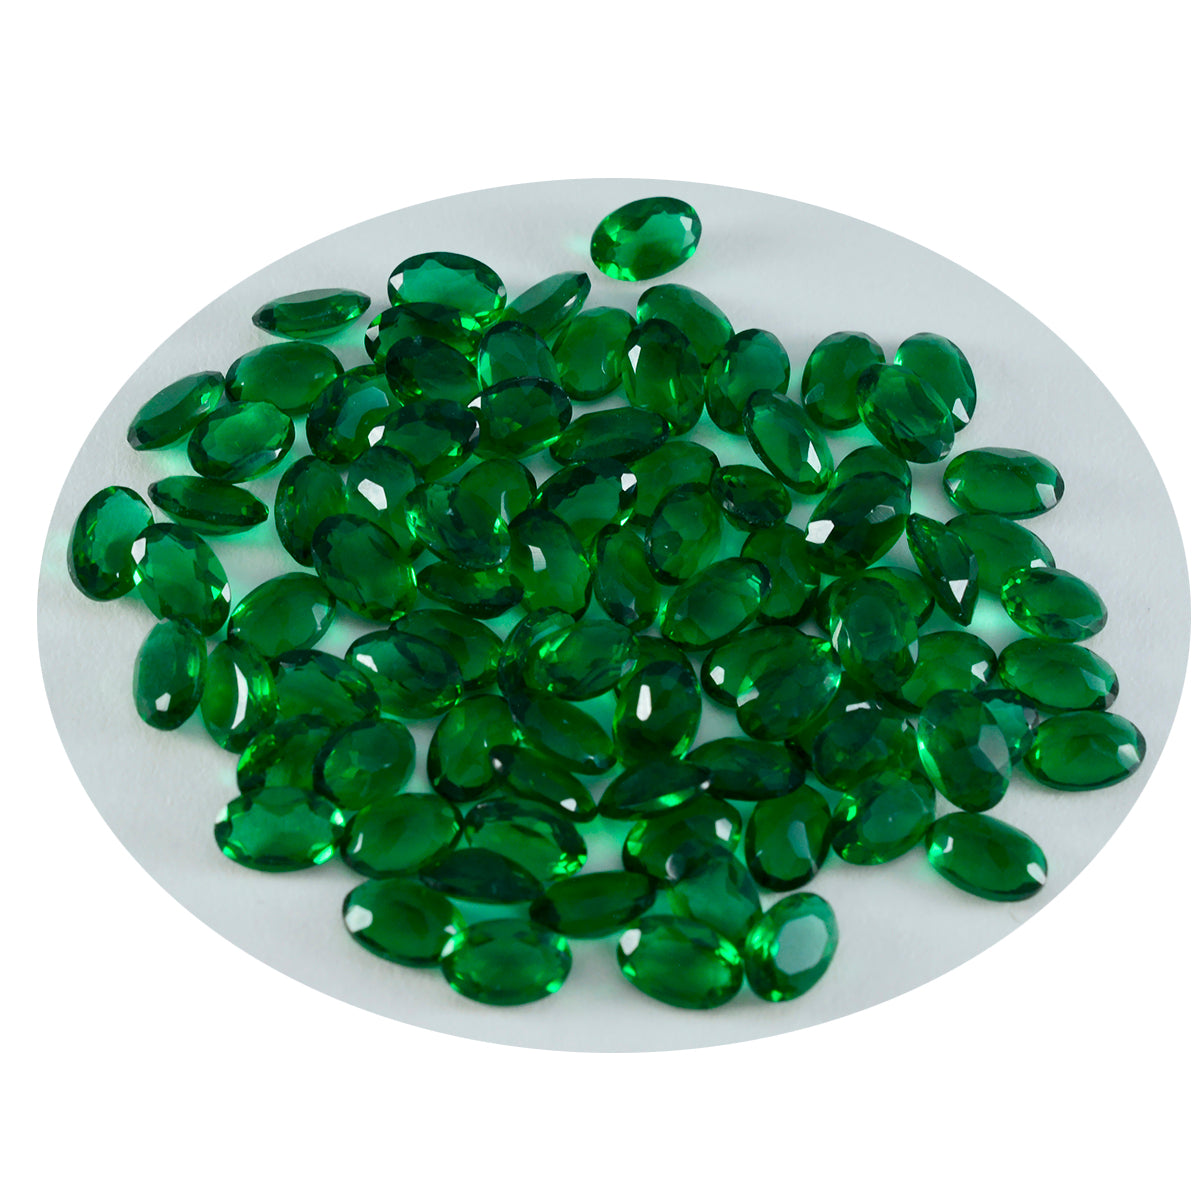 Riyogems 1 Stück grüner Smaragd, CZ, facettiert, 3 x 5 mm, ovale Form, schöne Qualität, loser Edelstein